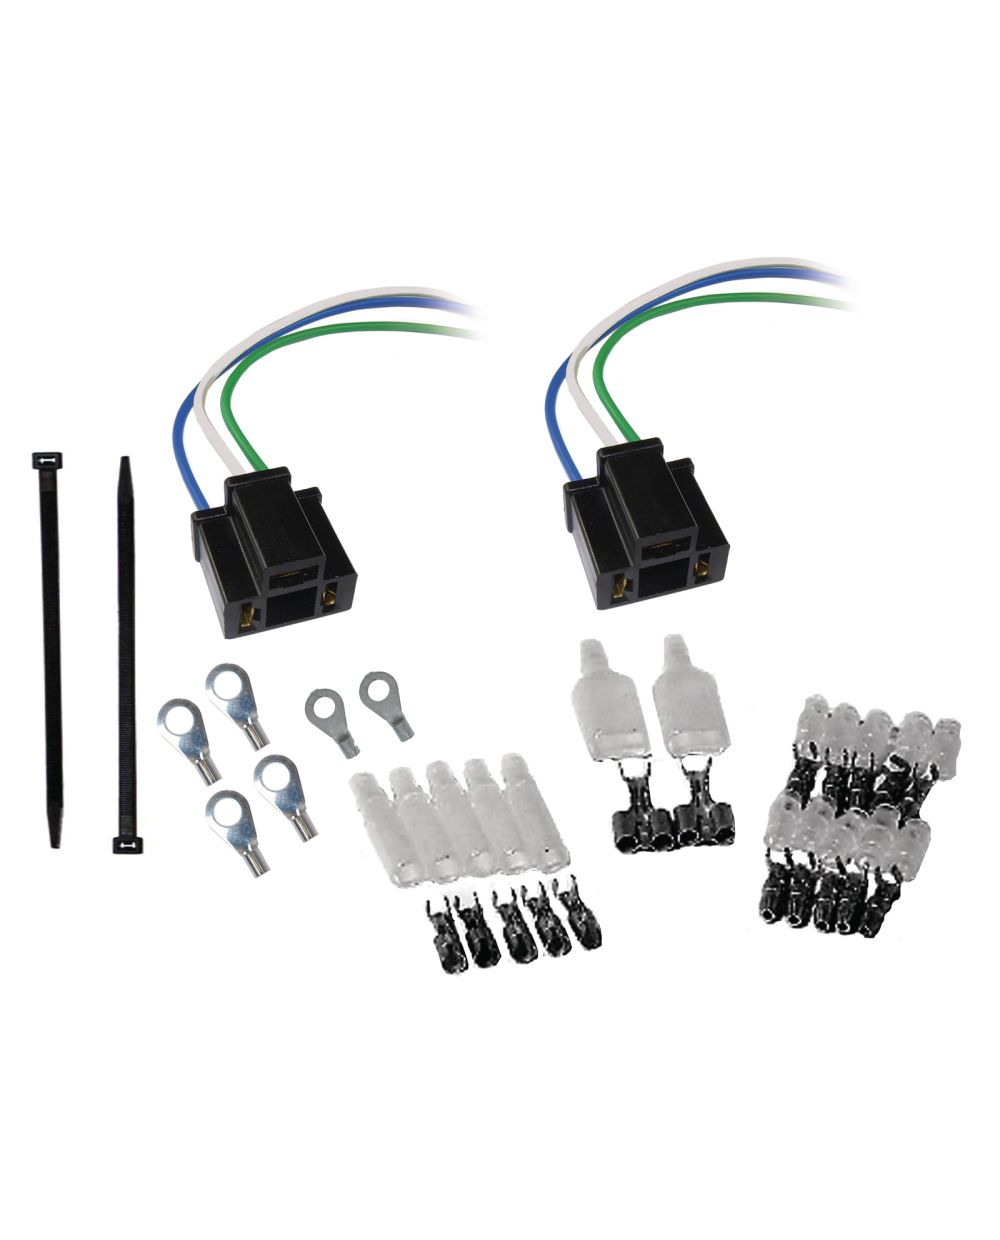 Kit raccords électriques(2 fiches à 3 poles pour culot H4, connecteurs type  japon 52 pièces, 100 serre-cables de 100mm, 4(2) oeillets de 6(5) mm